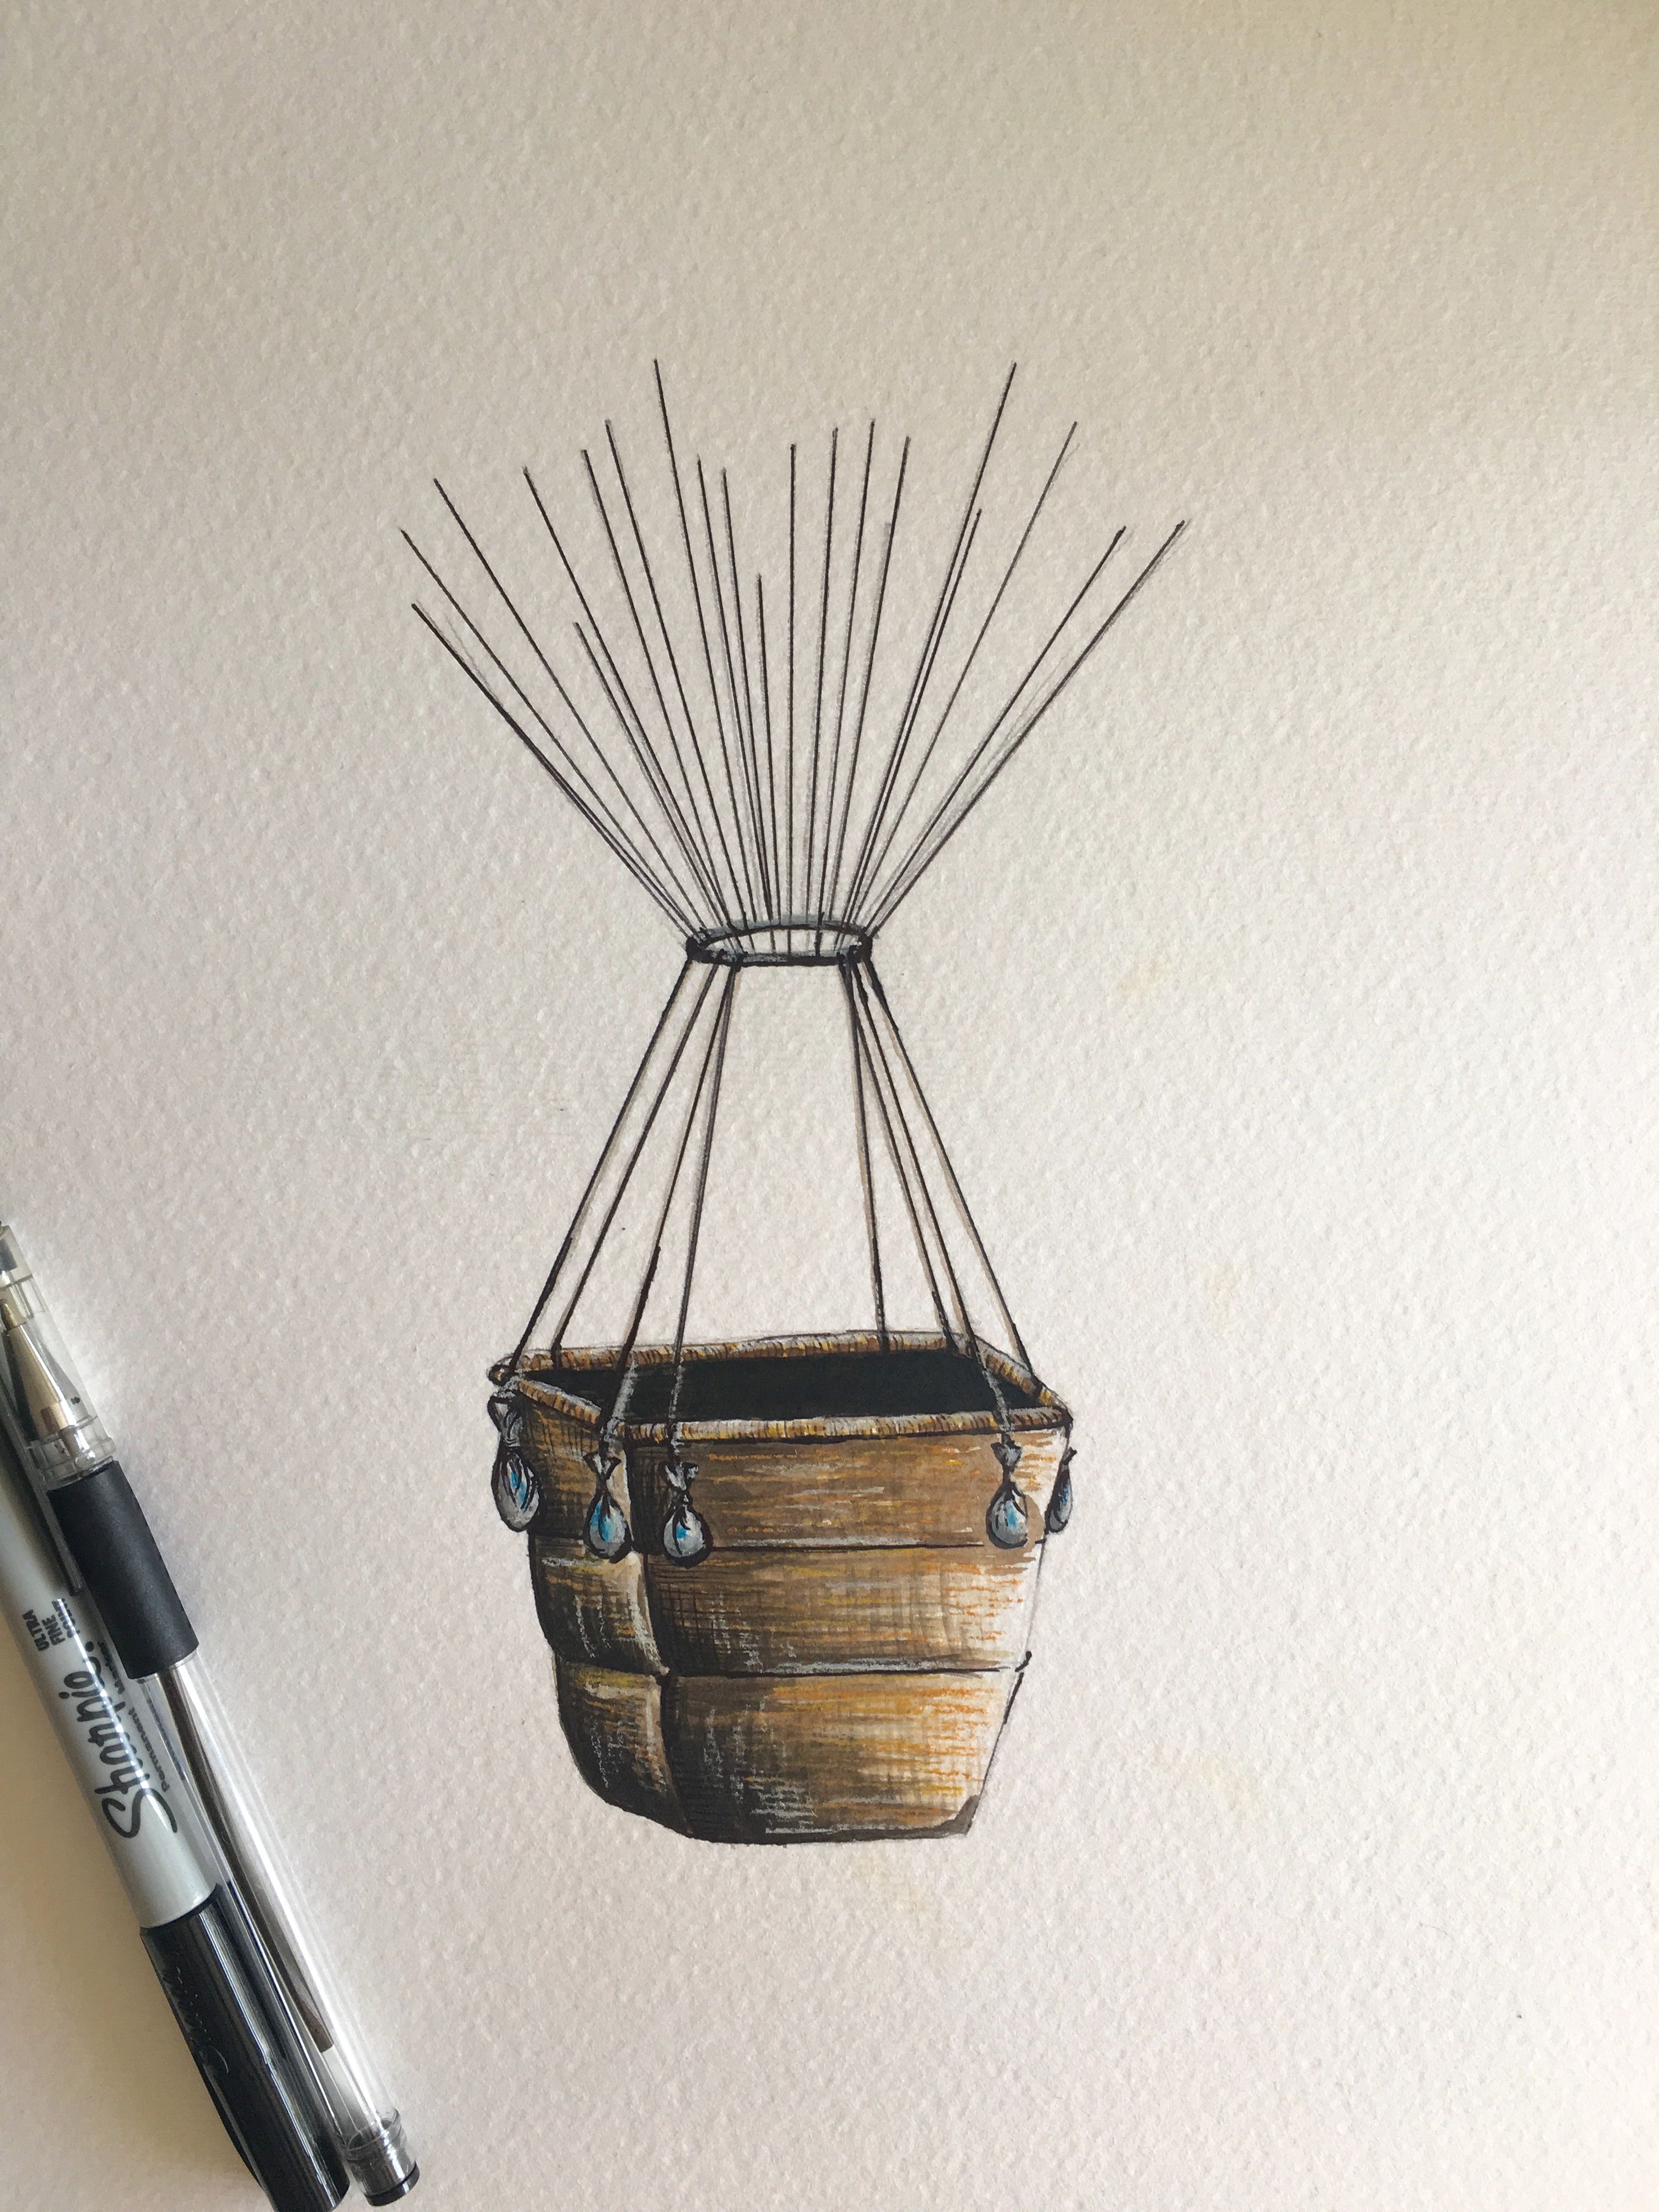 Hot Air Balloon Basket Drawing at GetDrawings Free download